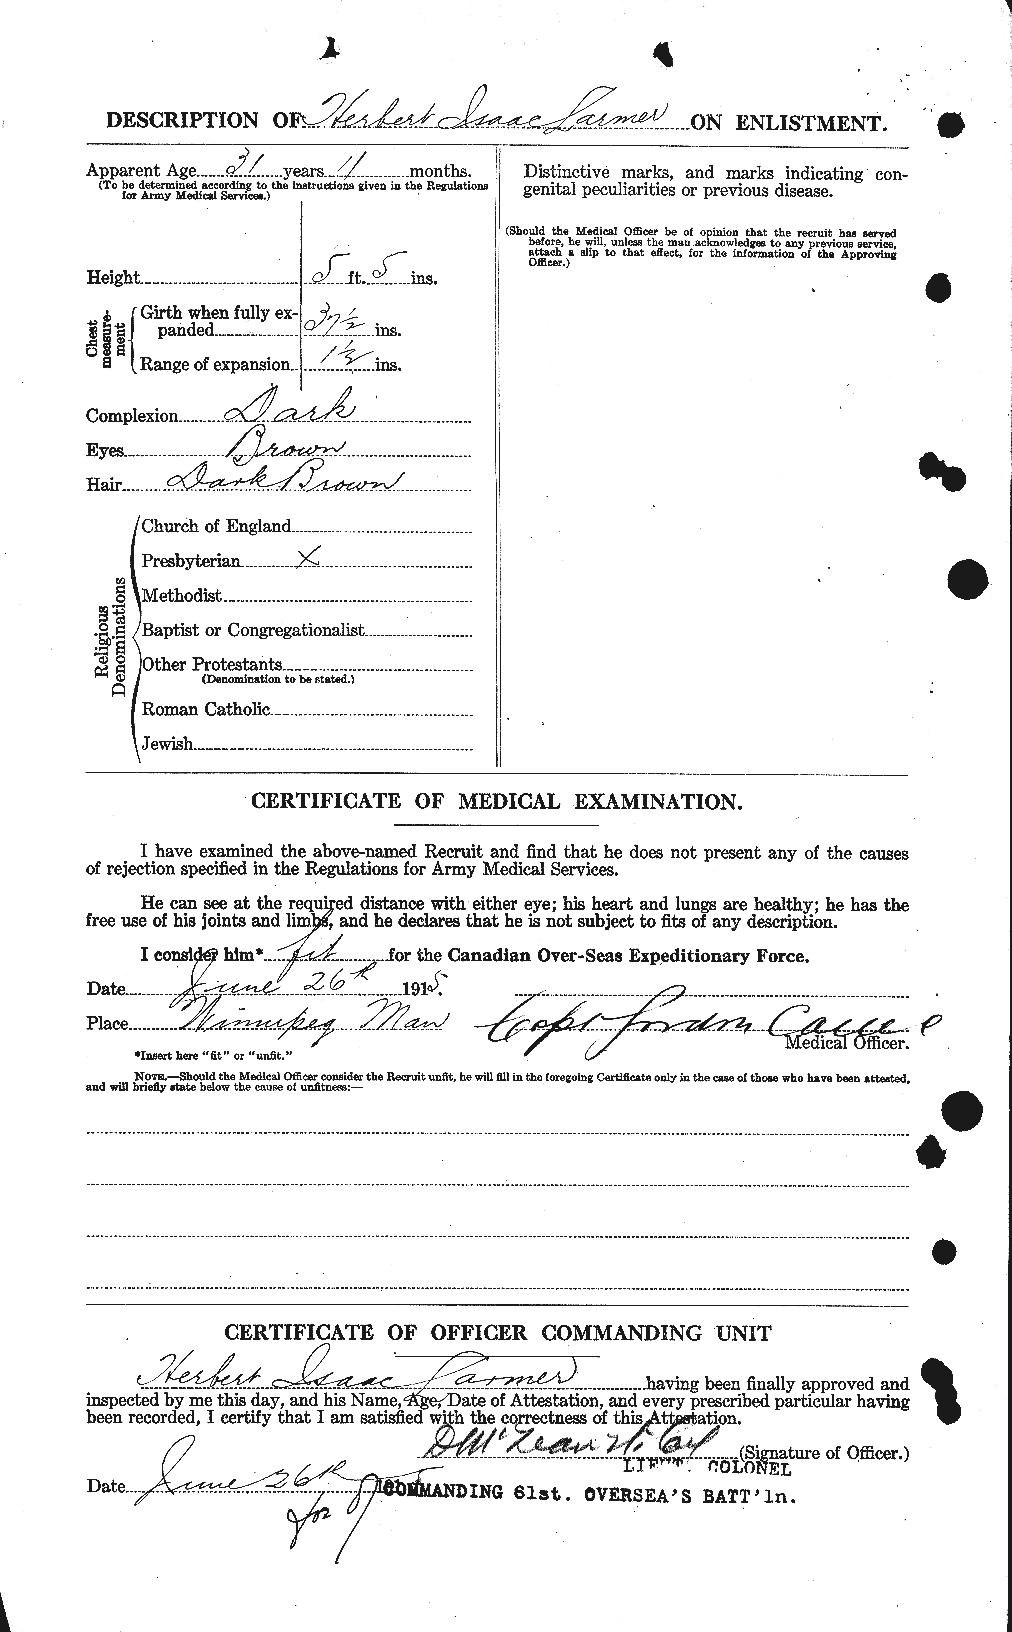 Dossiers du Personnel de la Première Guerre mondiale - CEC 450638b